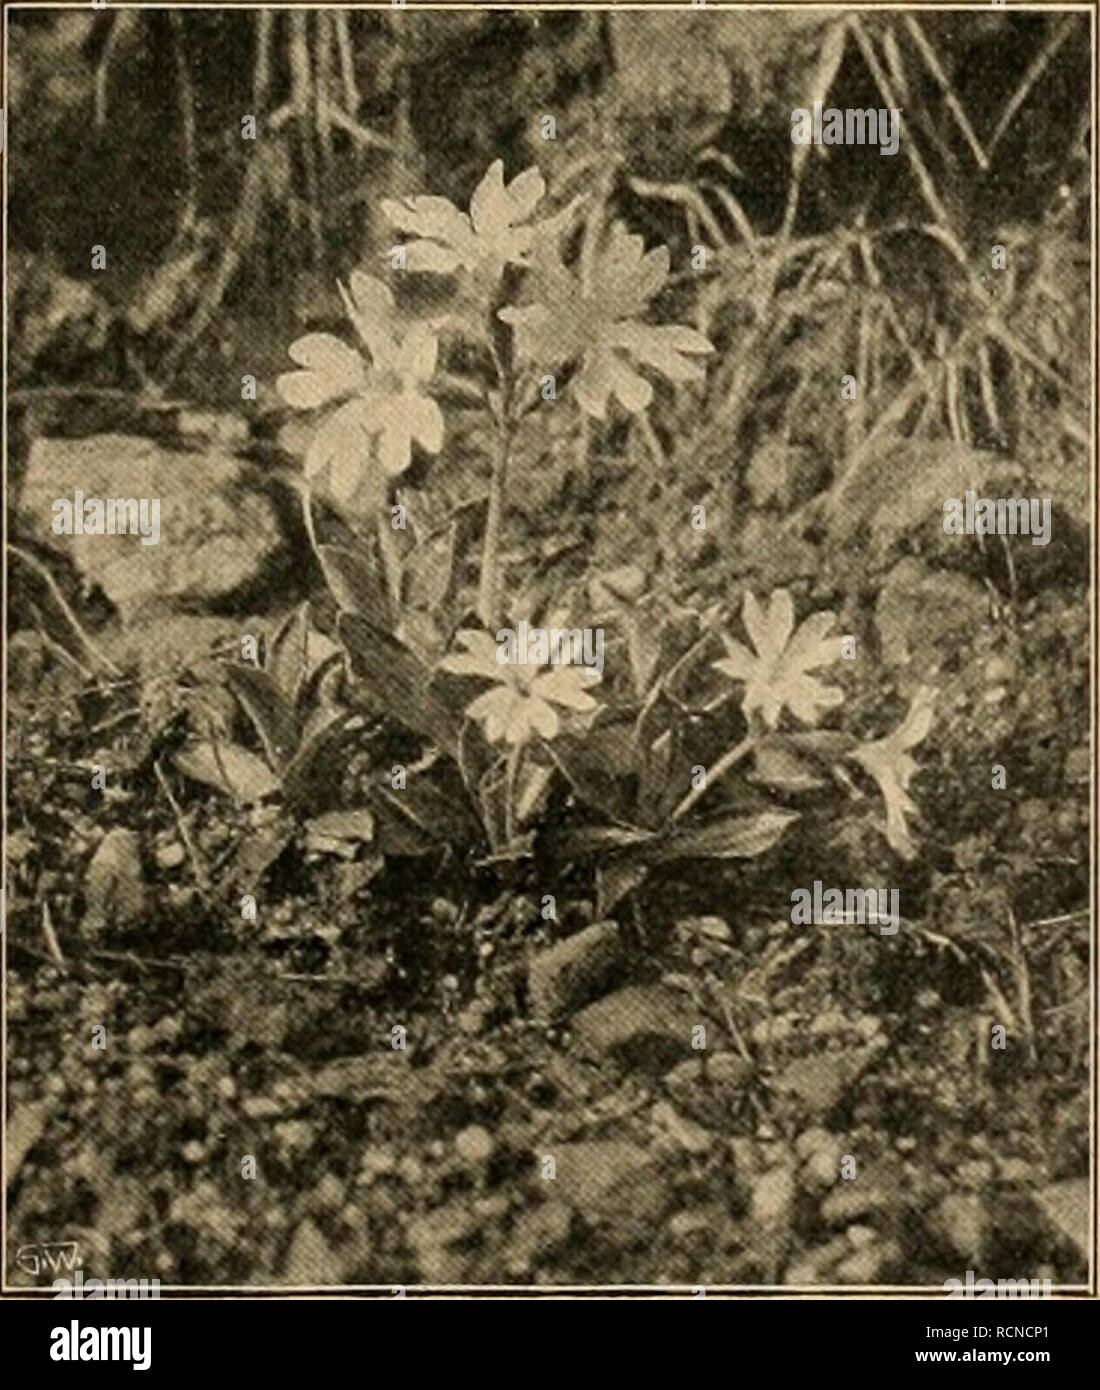 . Die Gartenwelt. Gardening. Primula marginata im Pflanzcngartcii zu Schandau. wohl auch nach Freilich, schon hier zeigt sich zuweilen die für weniger der Herkunft günstige Lagen noch viel häufigere Erscheinung, daß diese undderAbstam- hochalpinen Primeln, wenn sie erwartungsvoll Knospen an- mung, recht ver- gesetzt haben, noch im Herbst aufs neue treiben und blühen, schieden. Unsere Vegetationsperiode ist ihnen eben zu lang. Des- In der son- halb wird man im Freiland oft mit Topfexemplaren, die man nigen Tiefland- im Sommer möglichst kühl stellen, schattieren und viel spritzen ebene ist ihre  Stock Photo